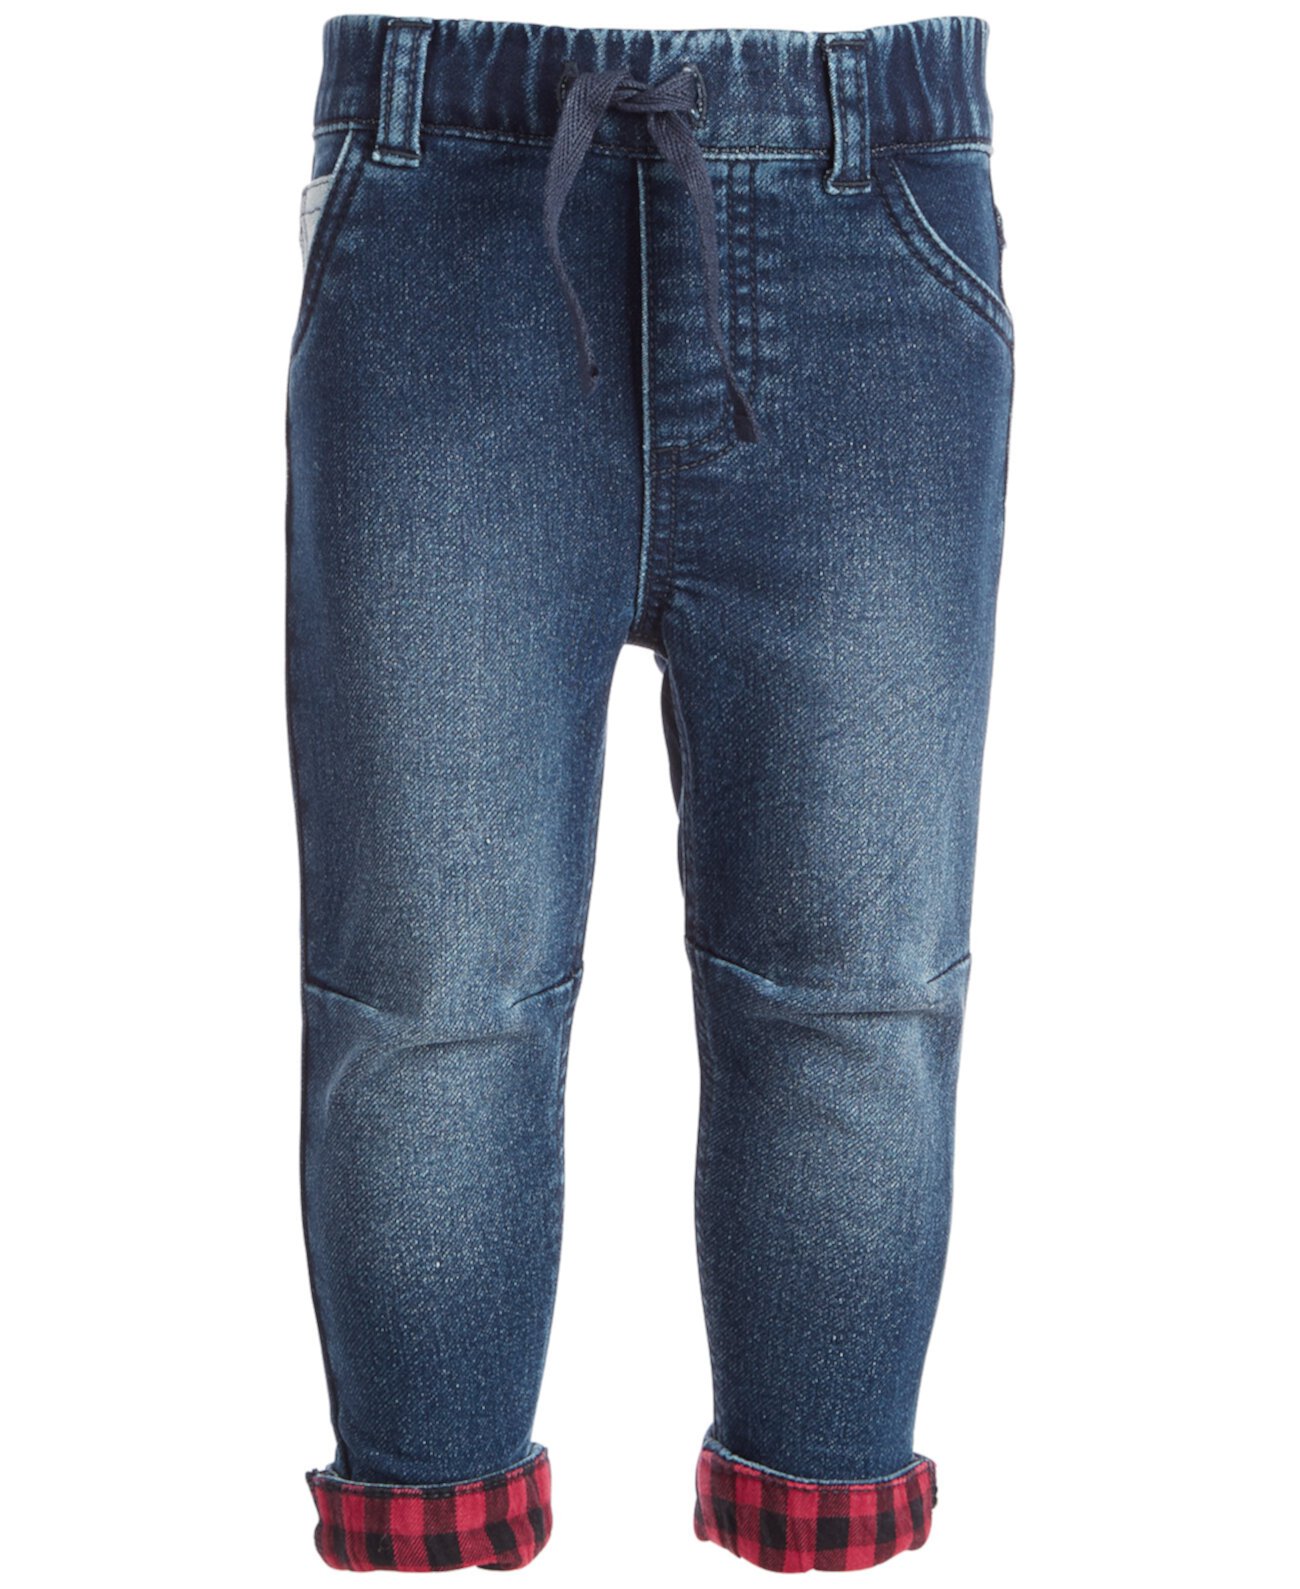 Фланелевые джинсы для мальчиков с манжетами, созданные для Macy's First Impressions